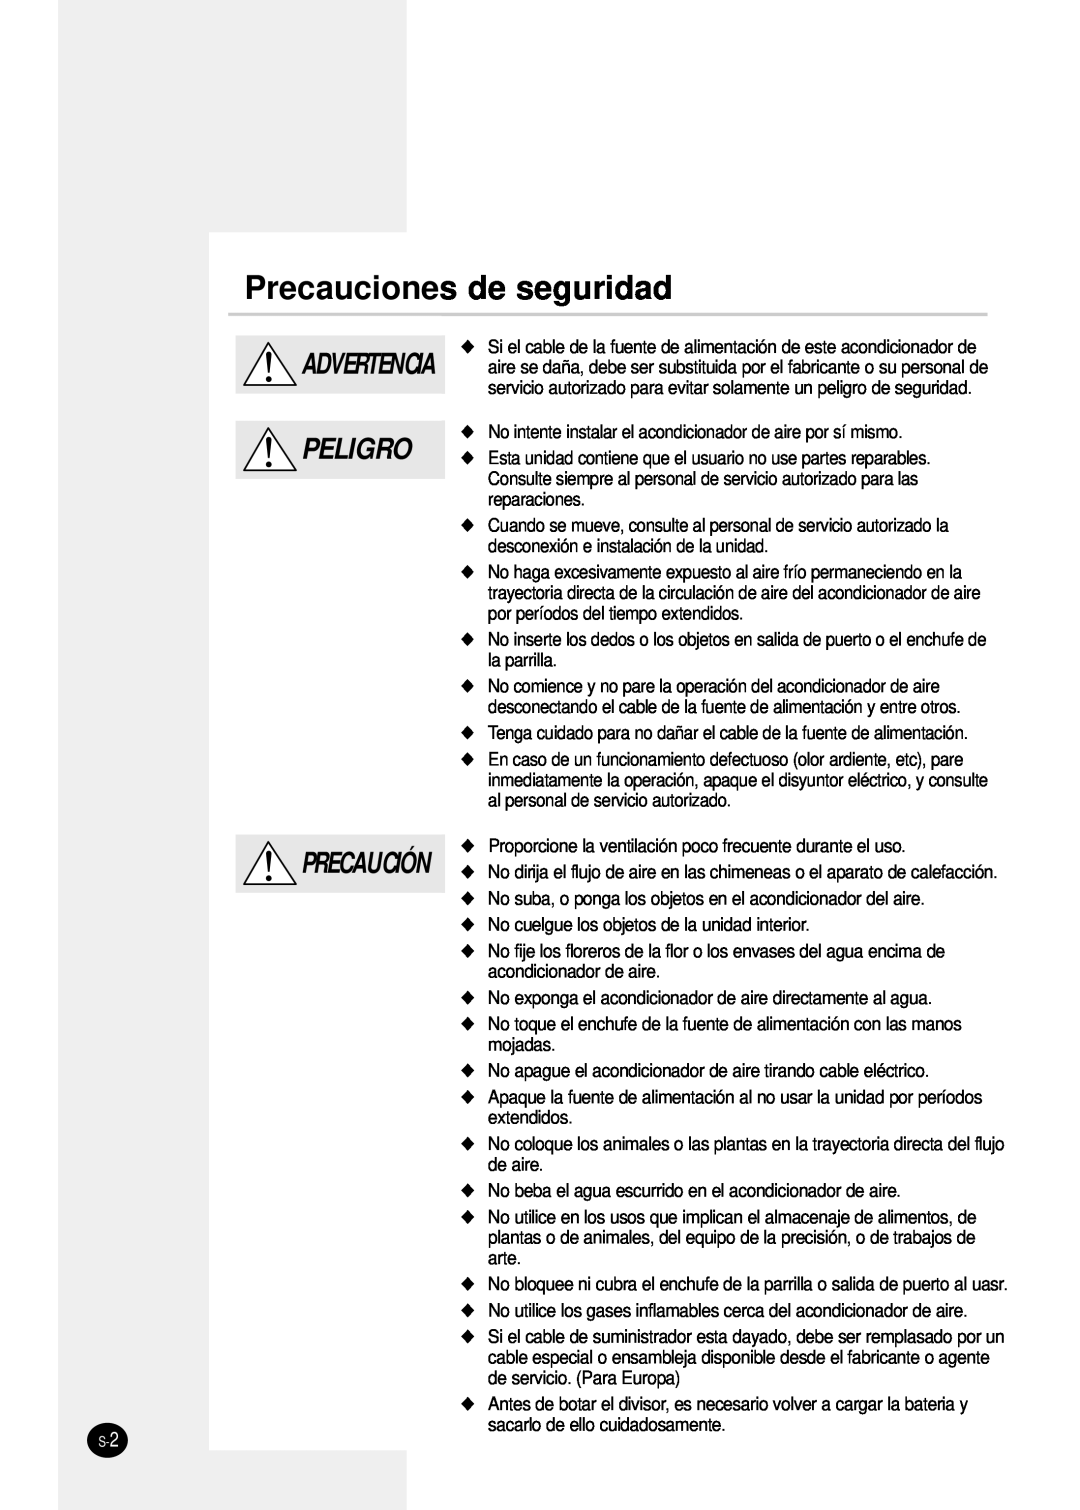 Samsung SH24TP6 manual Precauciones de seguridad, Advertencia Peligro Precaución 